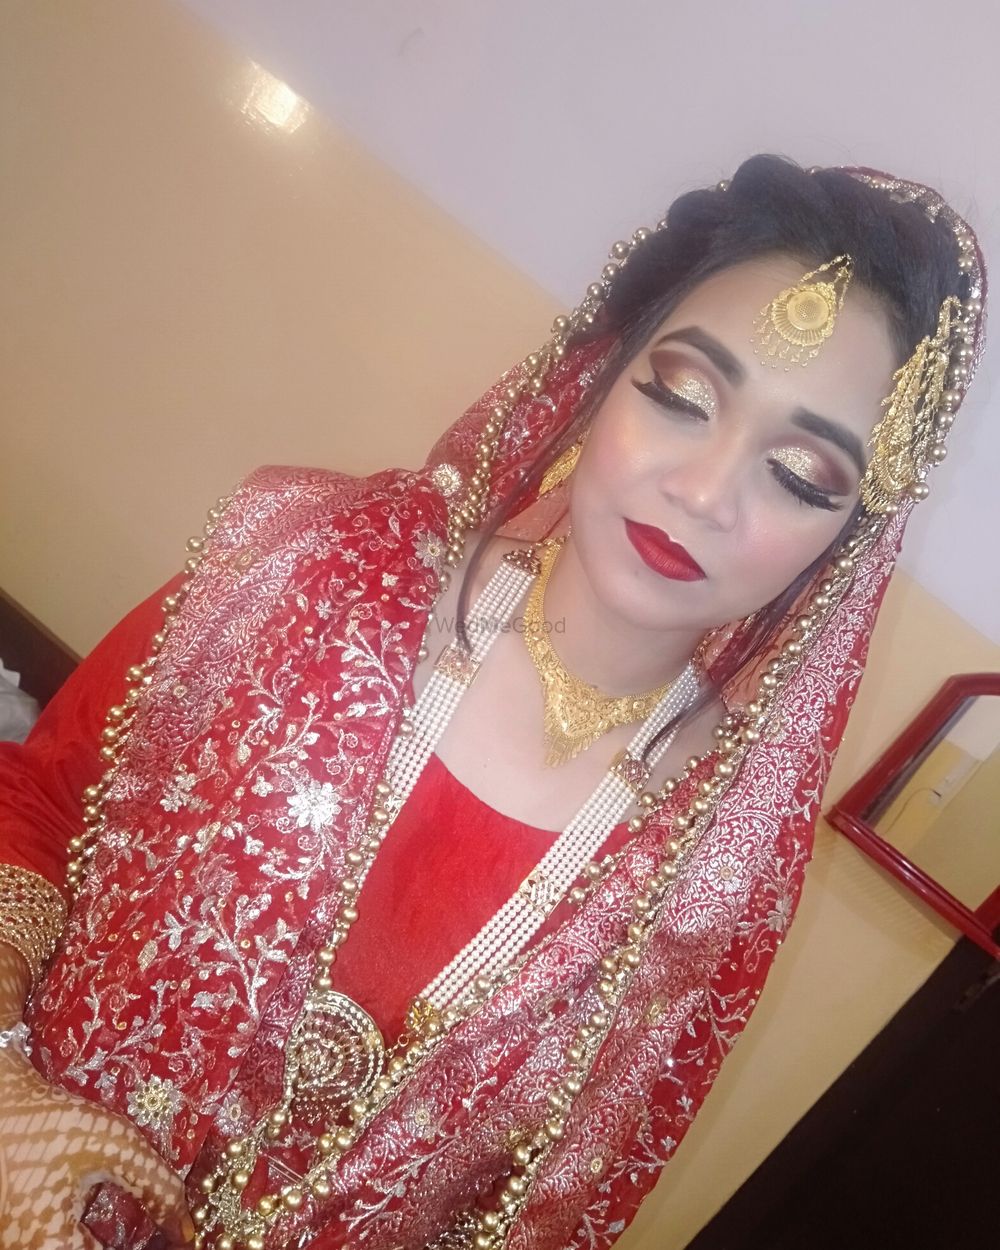 Photo From HD Makeup - By Makeup Artist Zaisha Khan